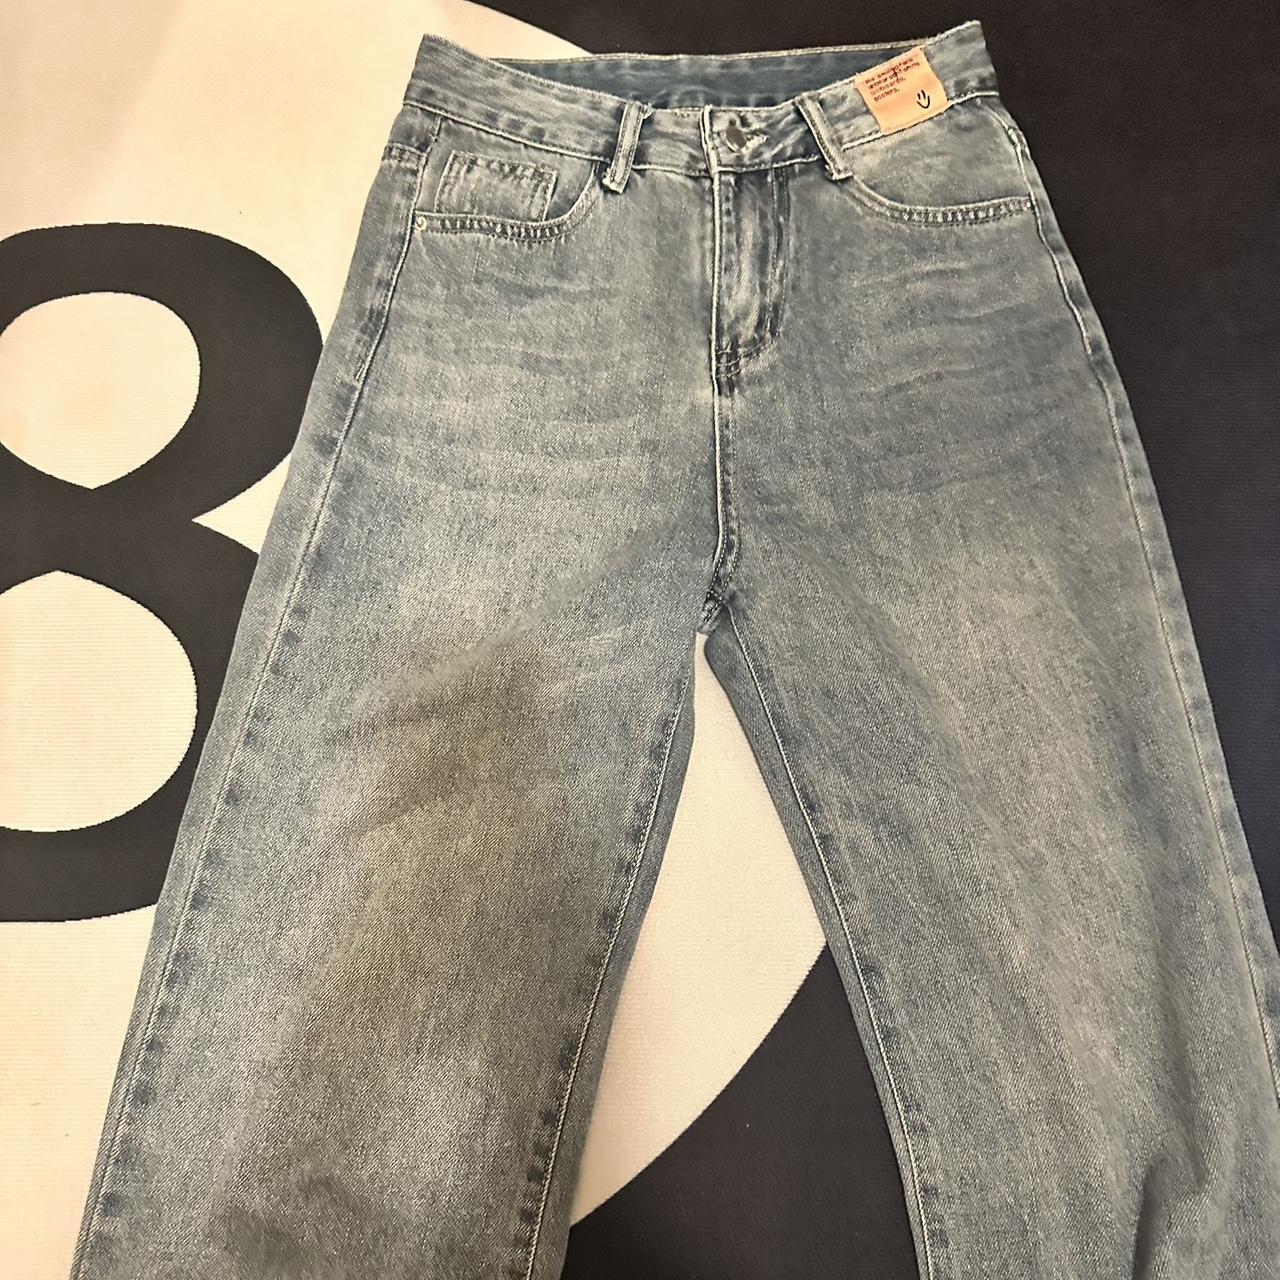 wide legged jeans got from korea fits 26’ - Depop